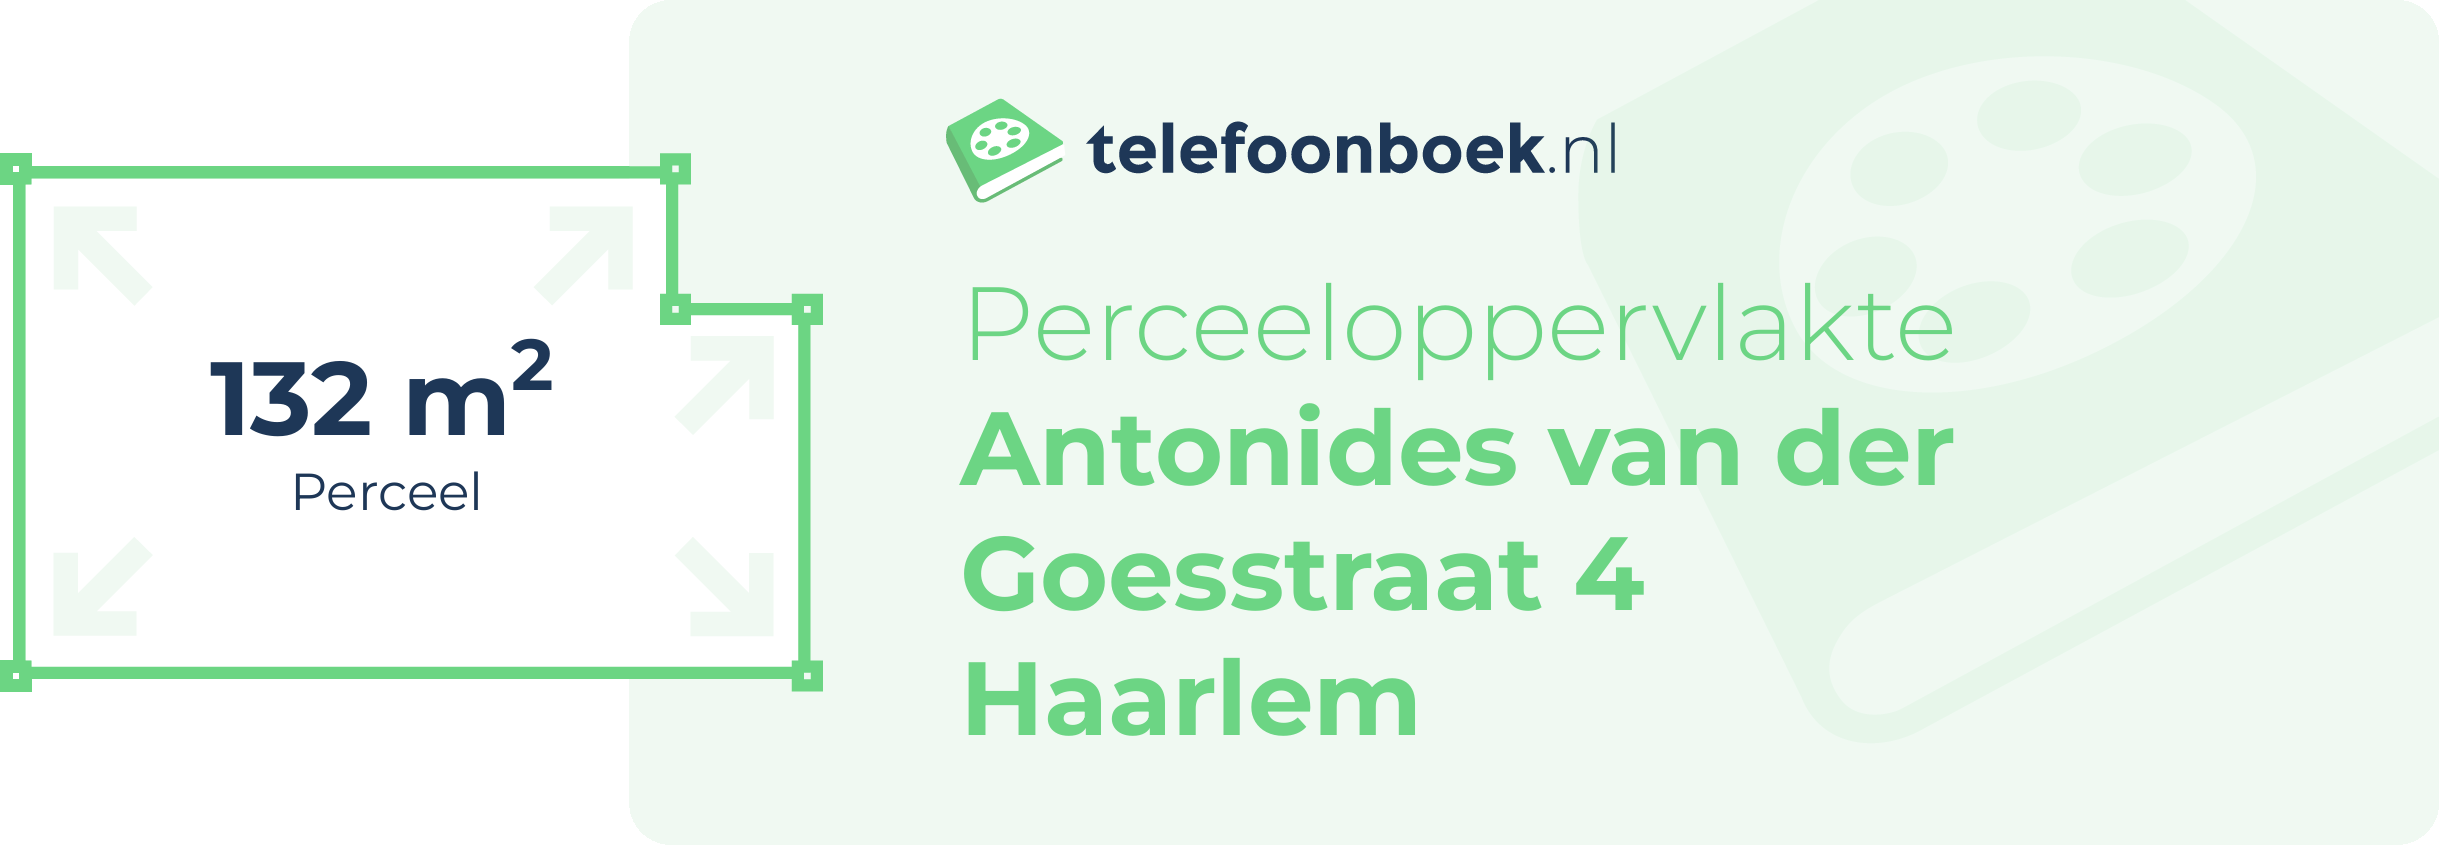 Perceeloppervlakte Antonides Van Der Goesstraat 4 Haarlem